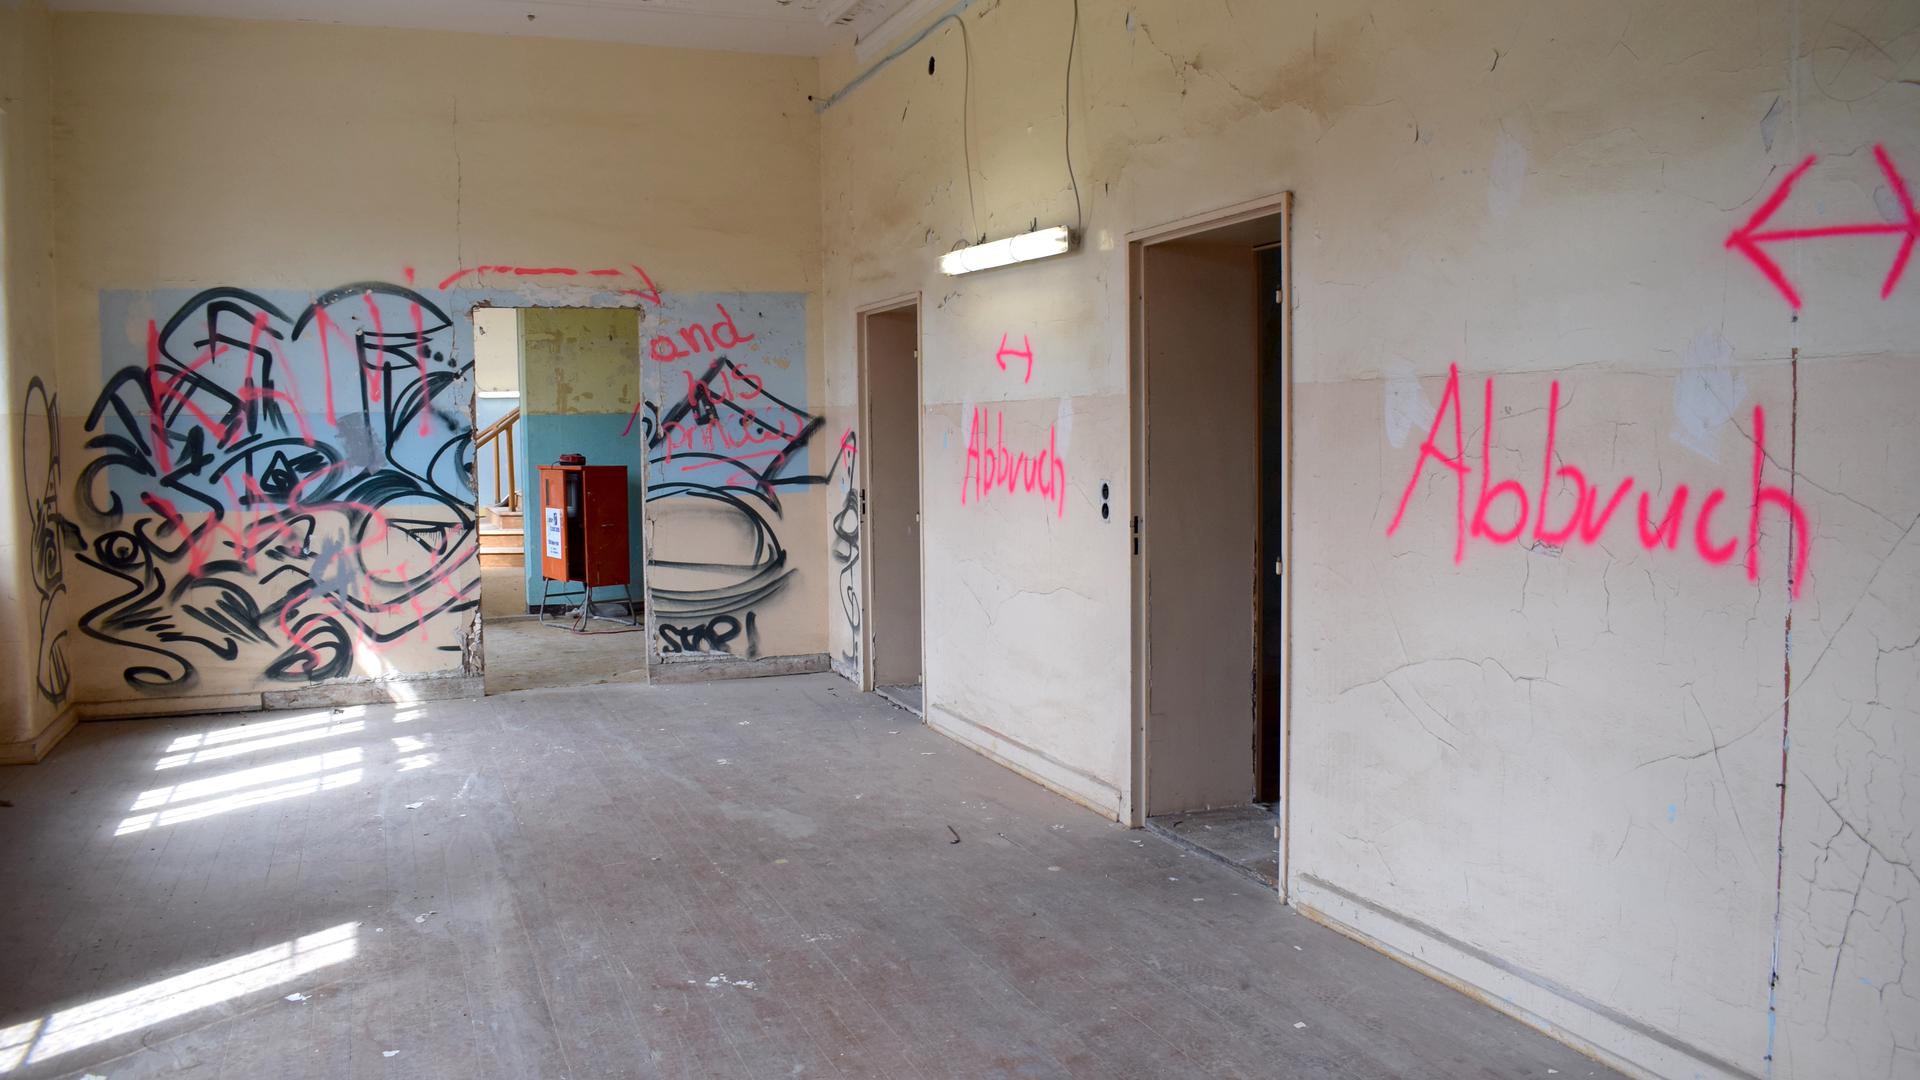 Ein Flur mit Graffiti-Gemälde und dem aufgesprühten Wort „Abbruch“ an den Wänden.